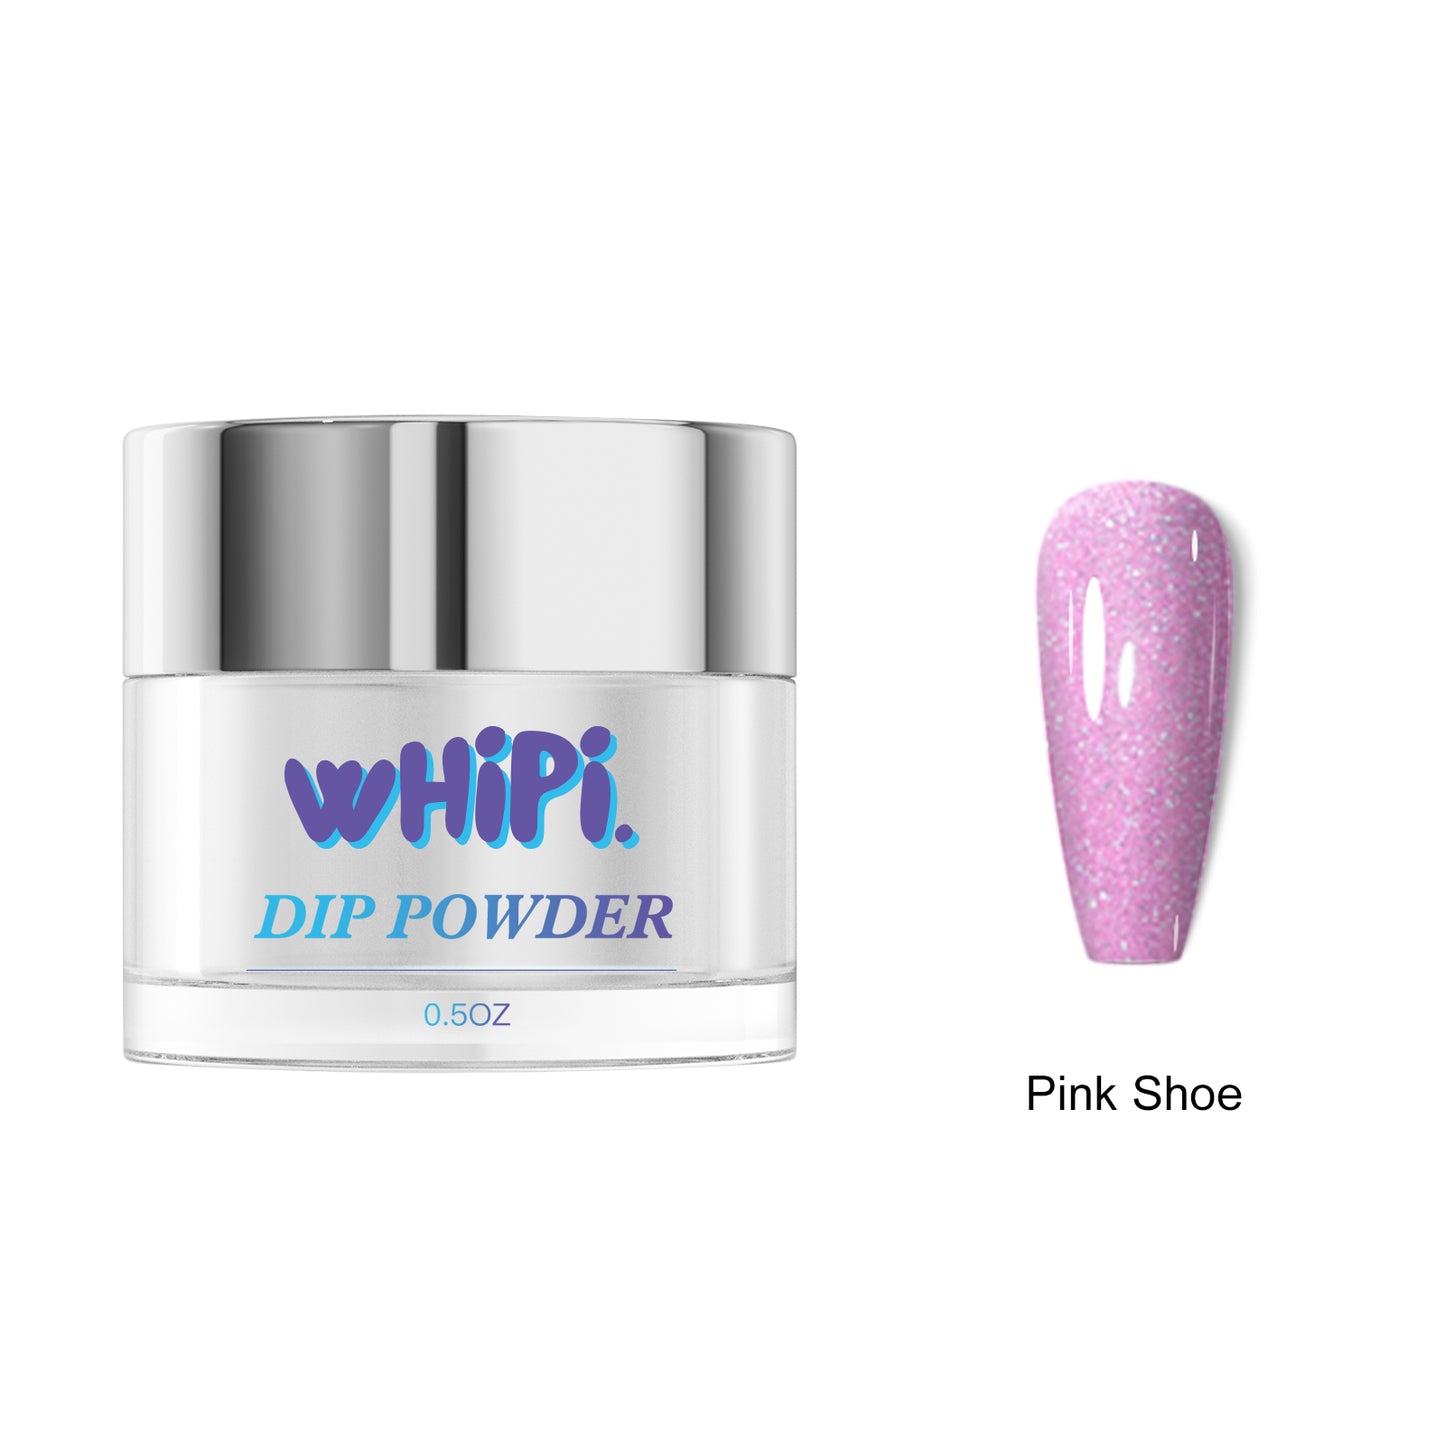 Pink Shoe Dip Powder